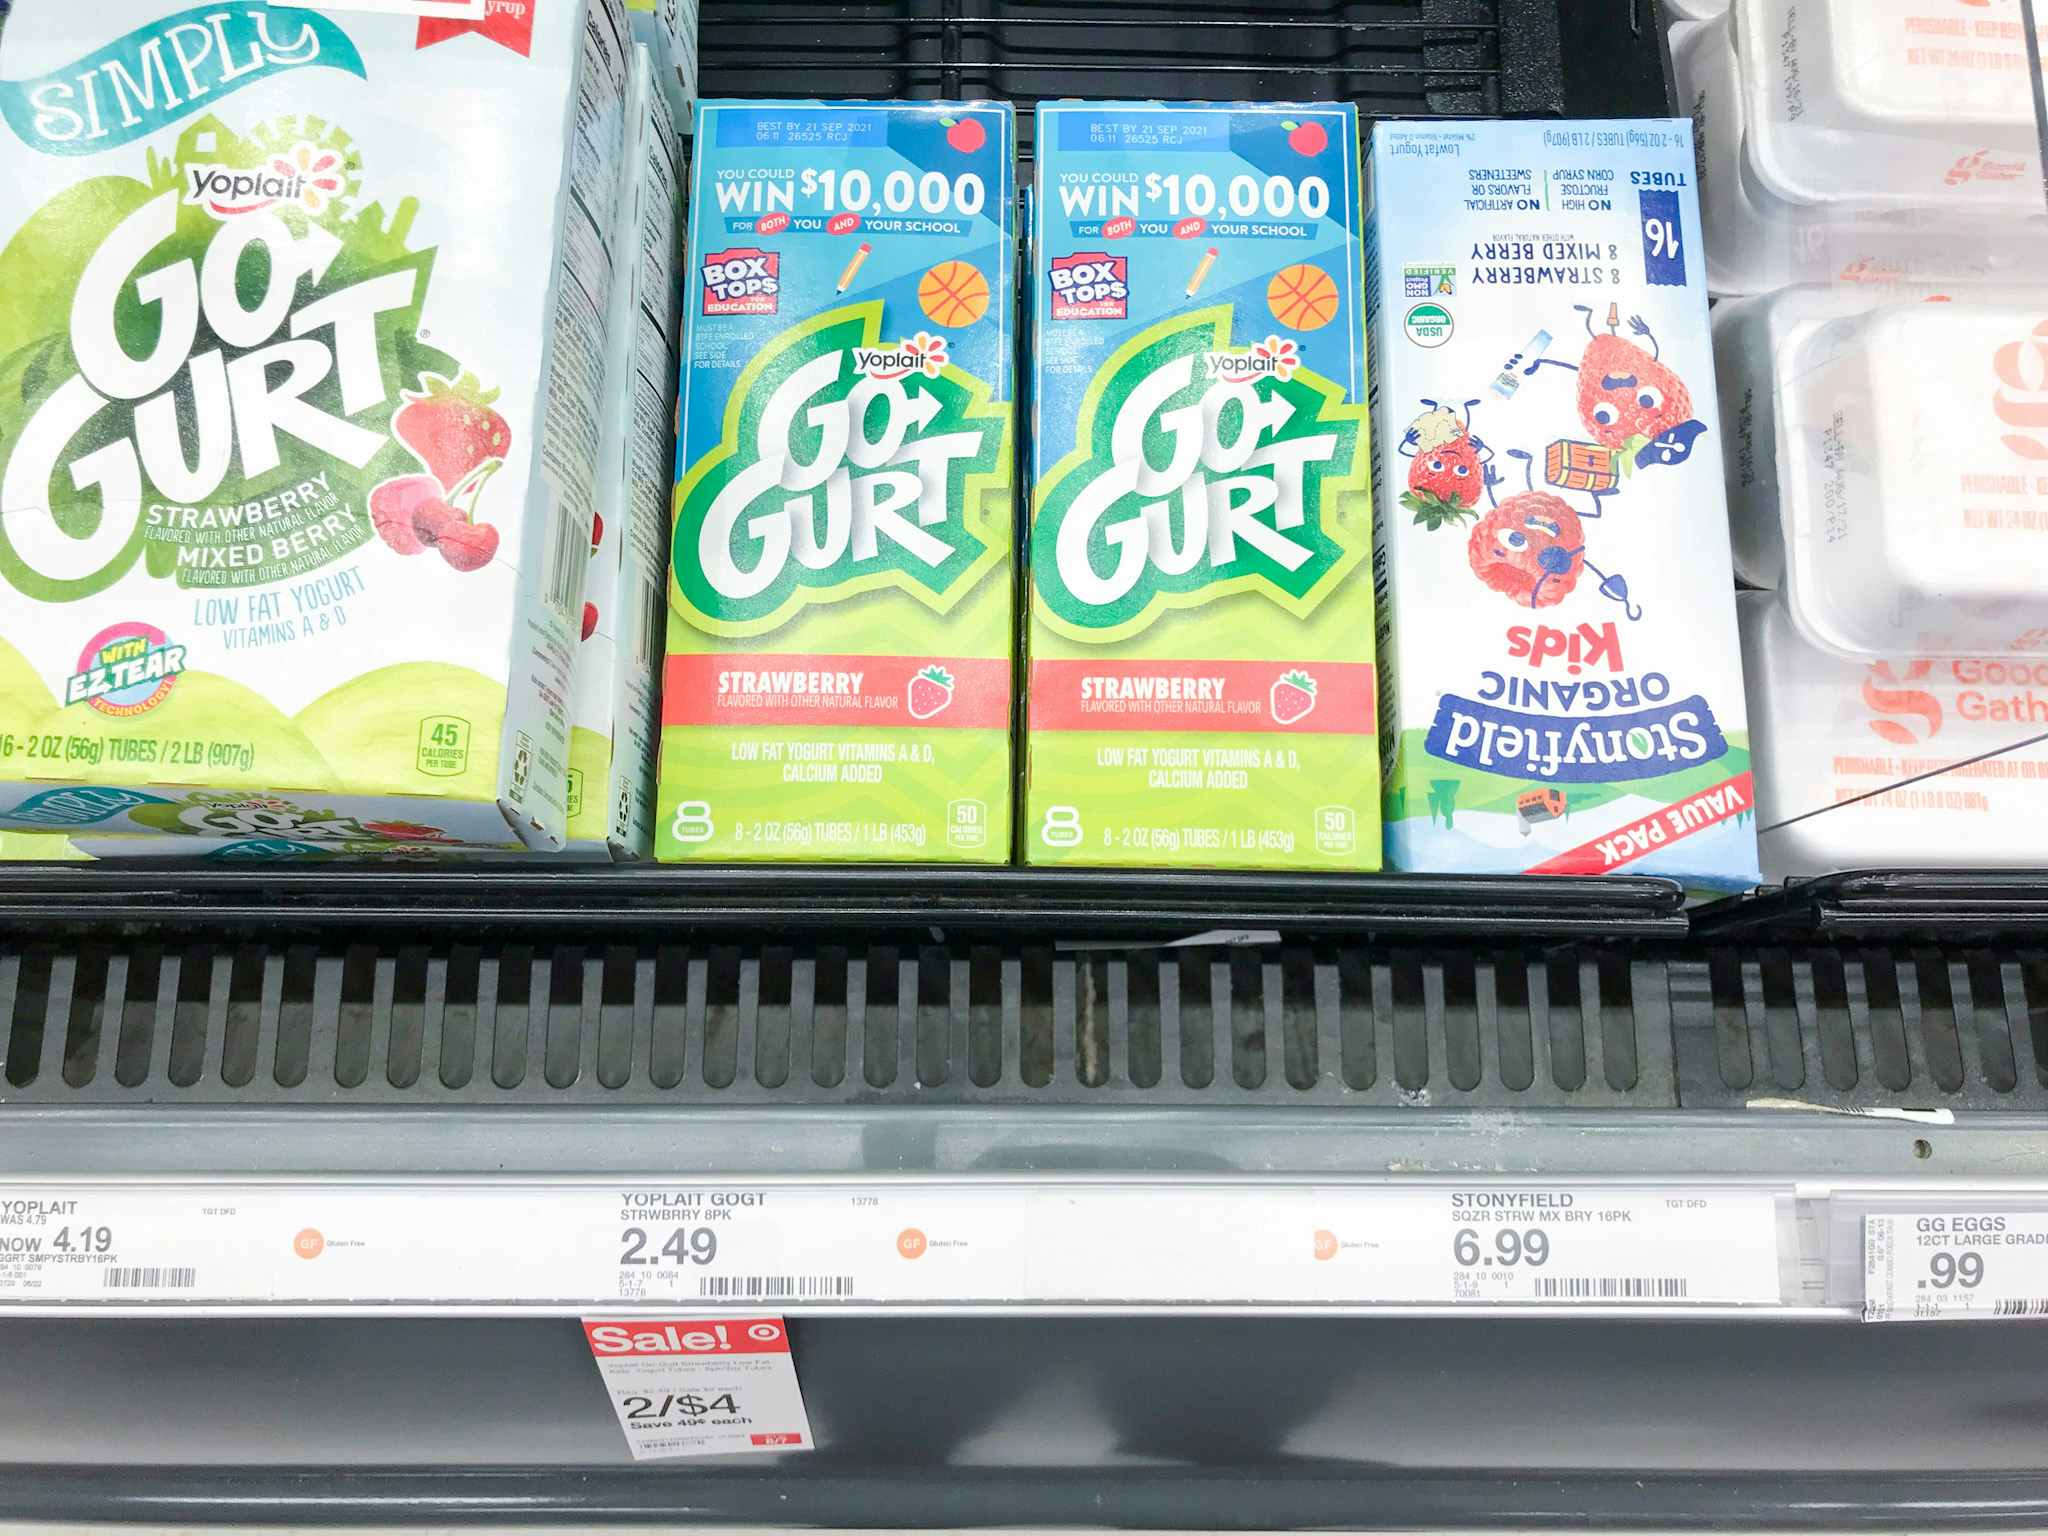 yoplait go-gurt yogurt tubes on a target shelf